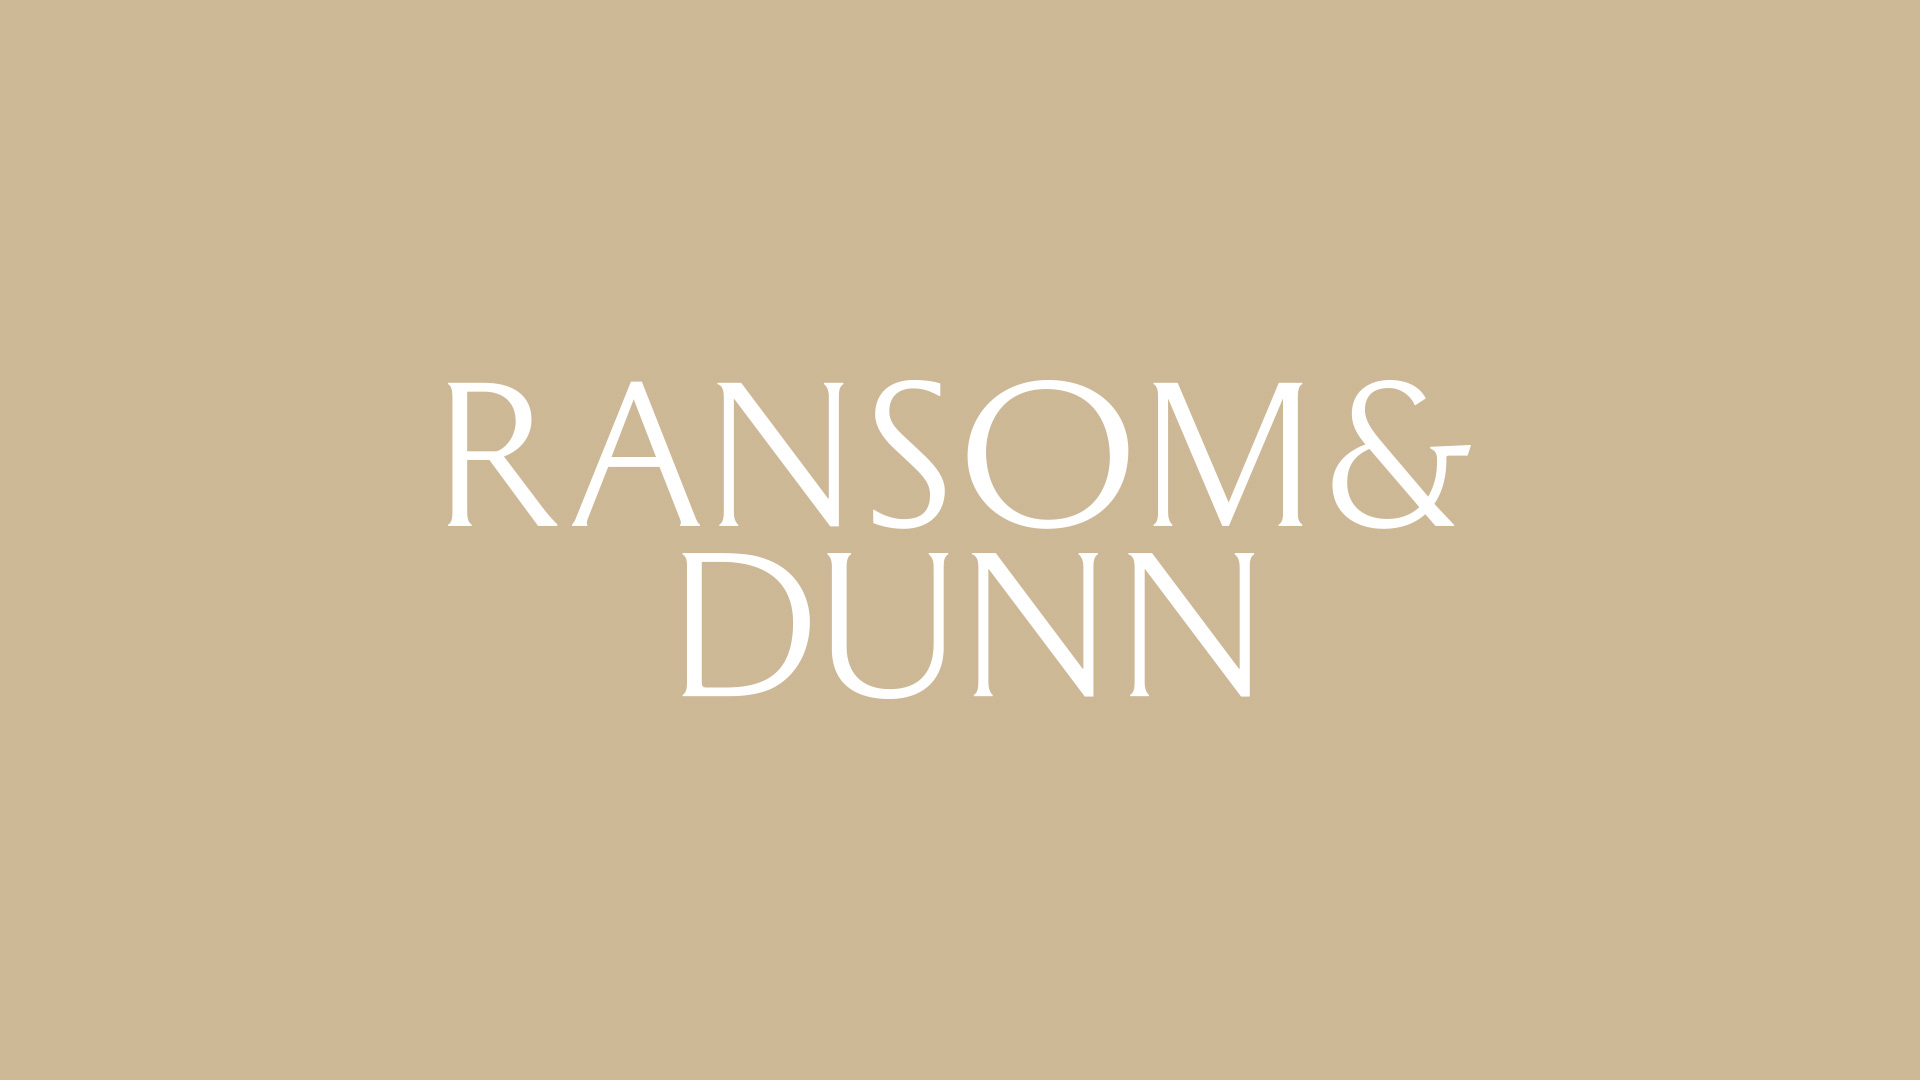 Ransom & Dunn